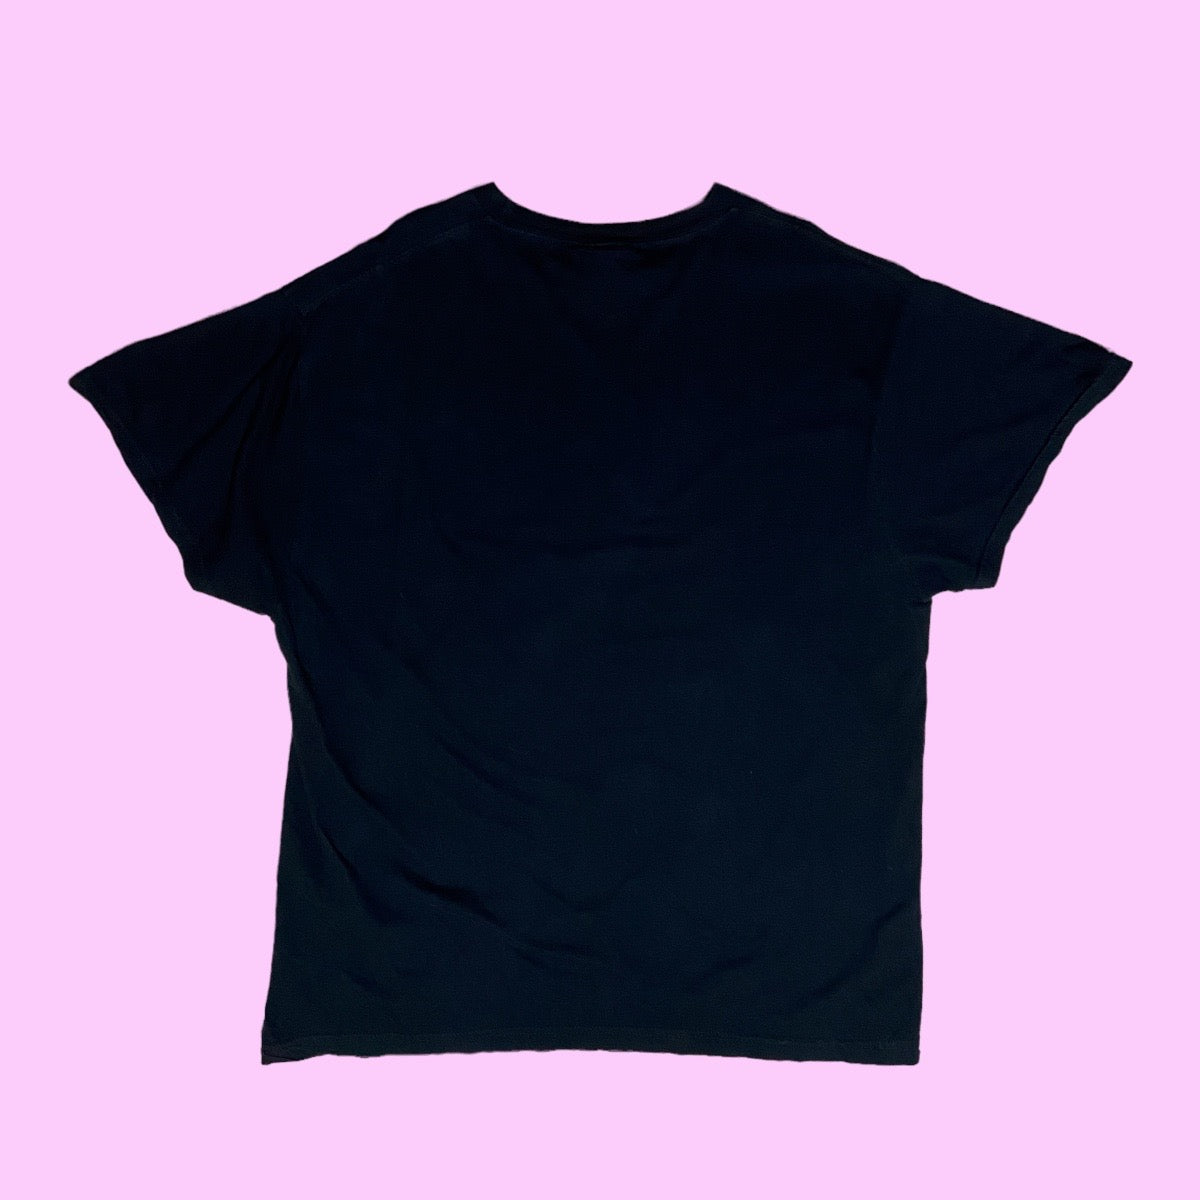 Vintage Nascar Tony Stewart t-shirt - 2XL